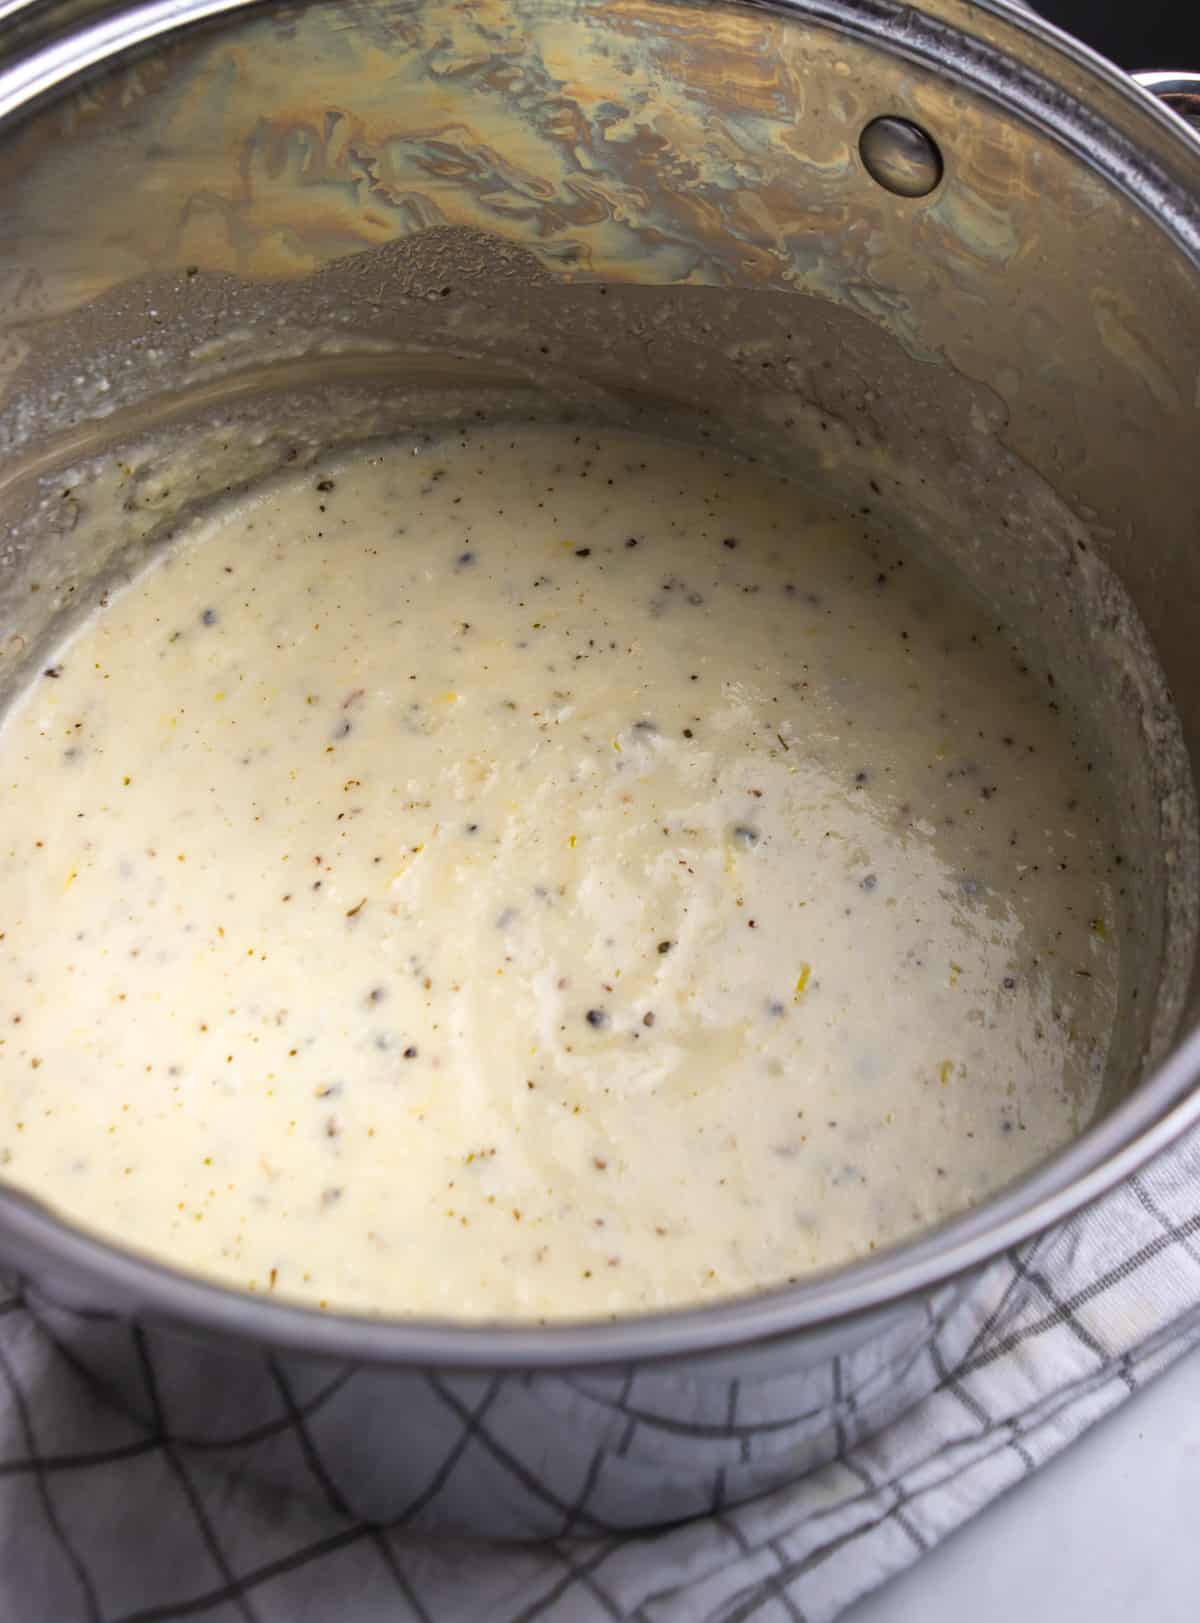 Lemon Ricotta sauce in pot.